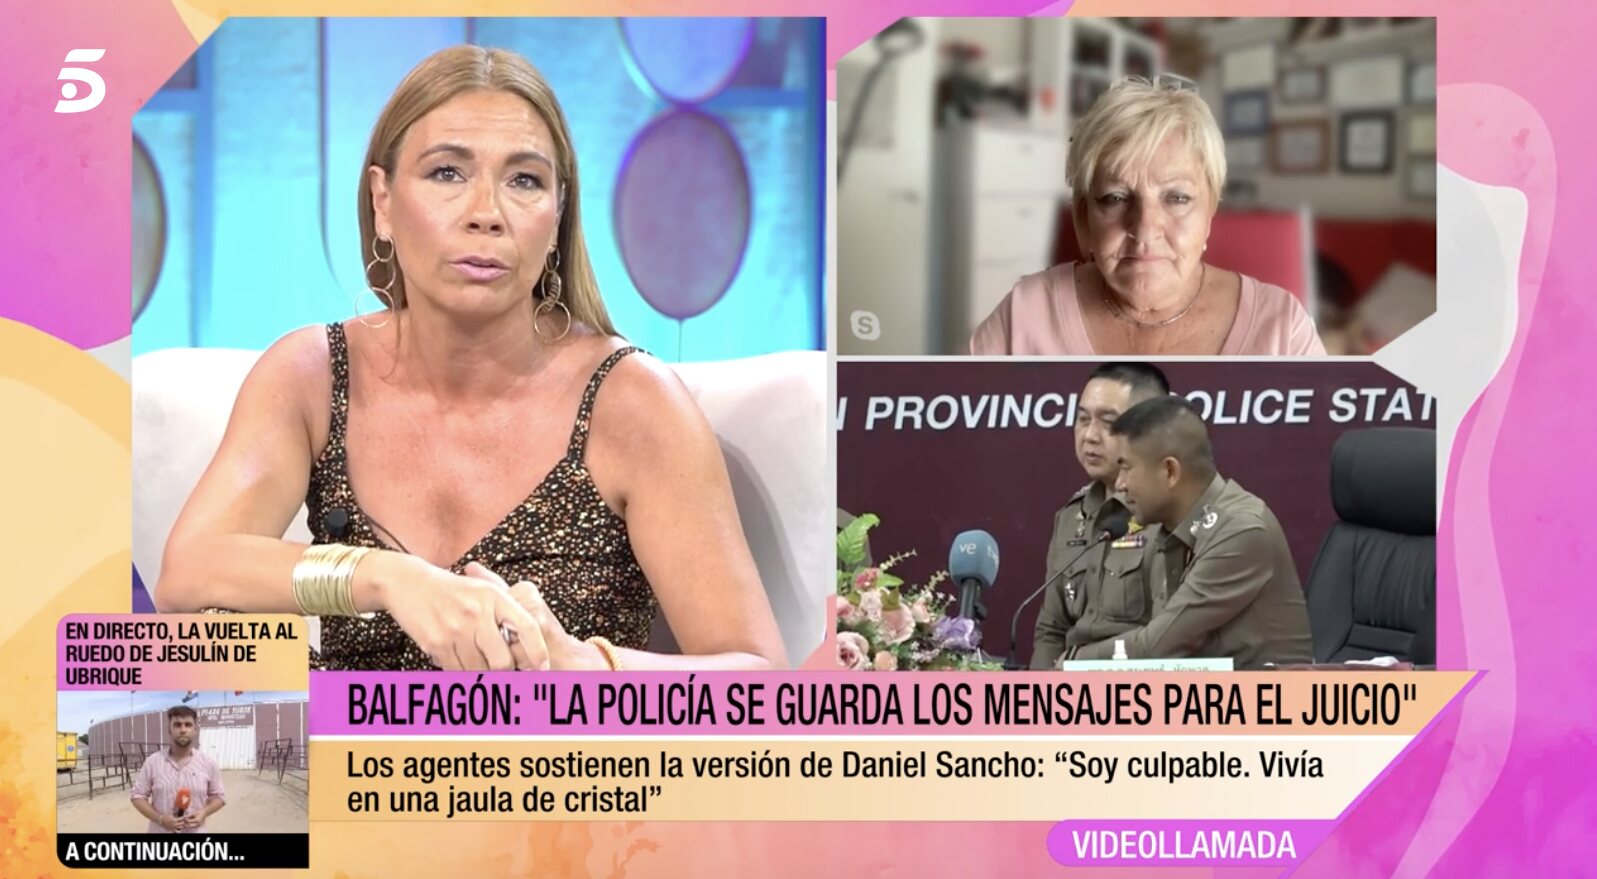 La portavoz de la familia Sancho está hablando por ellos en televisión | Foto: Telecinco.es